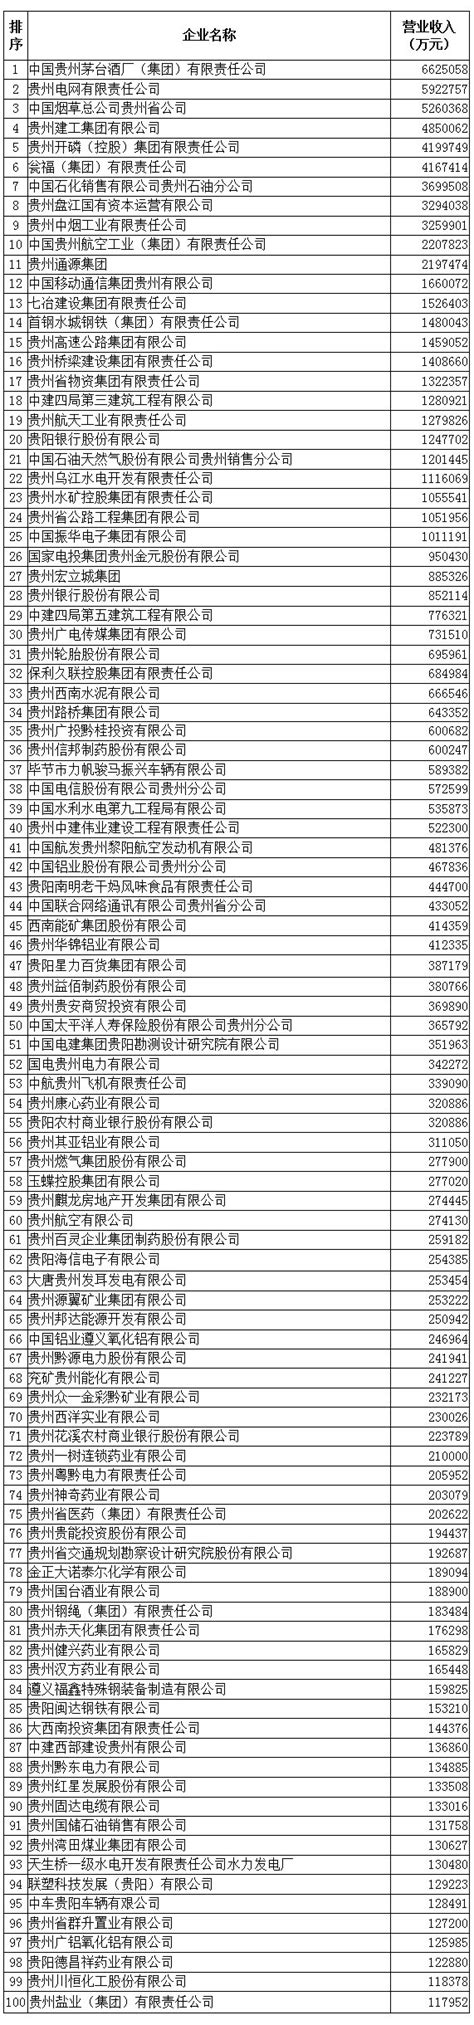 贵州省高新技术产业发展报告(2014-2019年)_虎窝淘